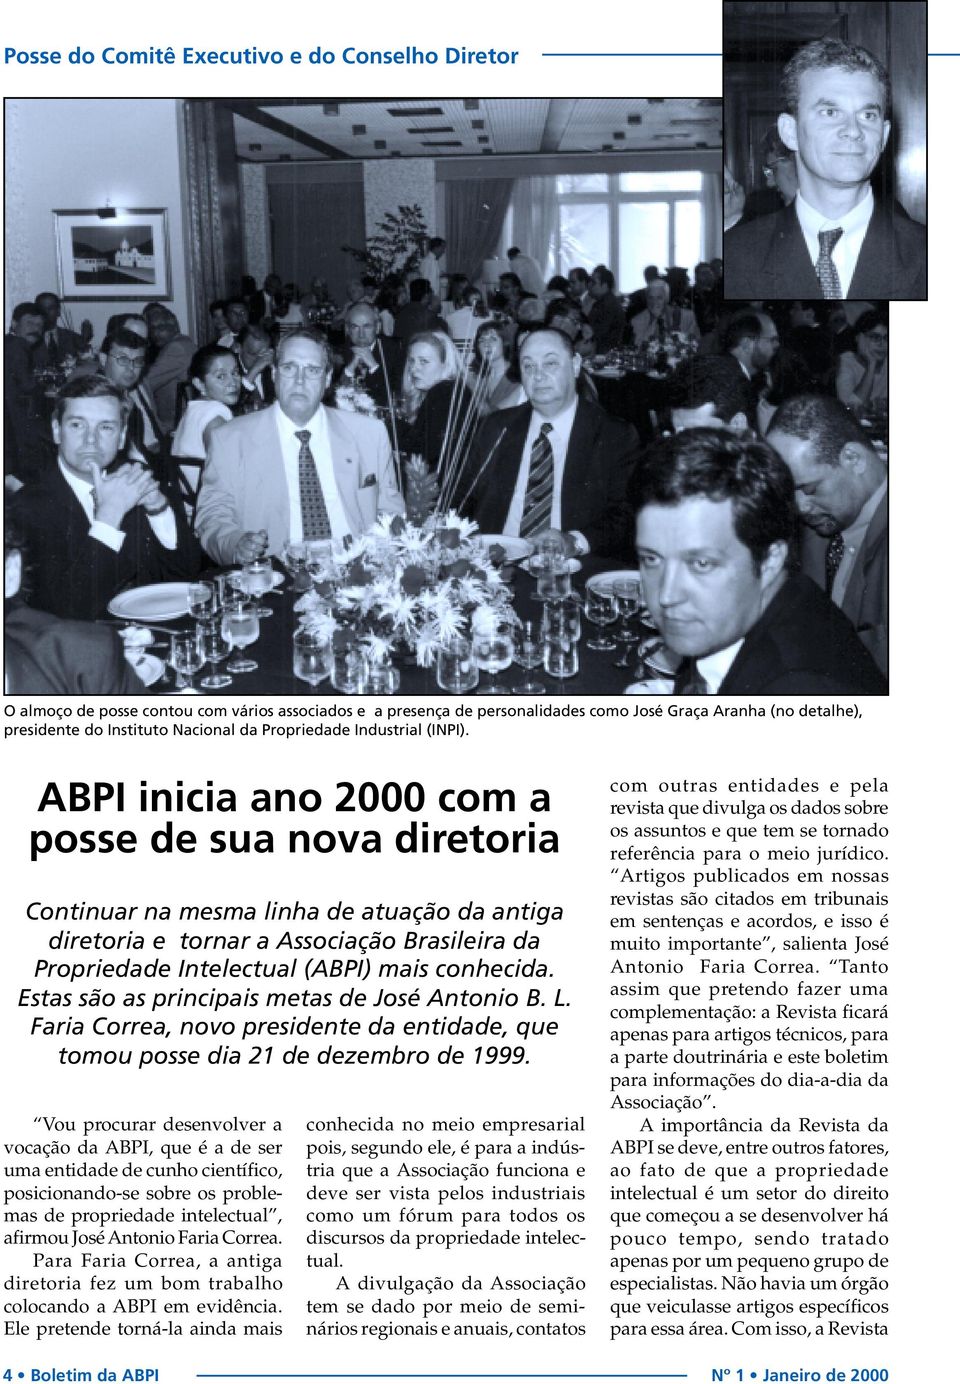 ABPI inicia ano 2000 com a posse de sua nova diretoria Continuar na mesma linha de atuação da antiga diretoria e tornar a Associação Brasileira da Propriedade Intelectual (ABPI) mais conhecida.